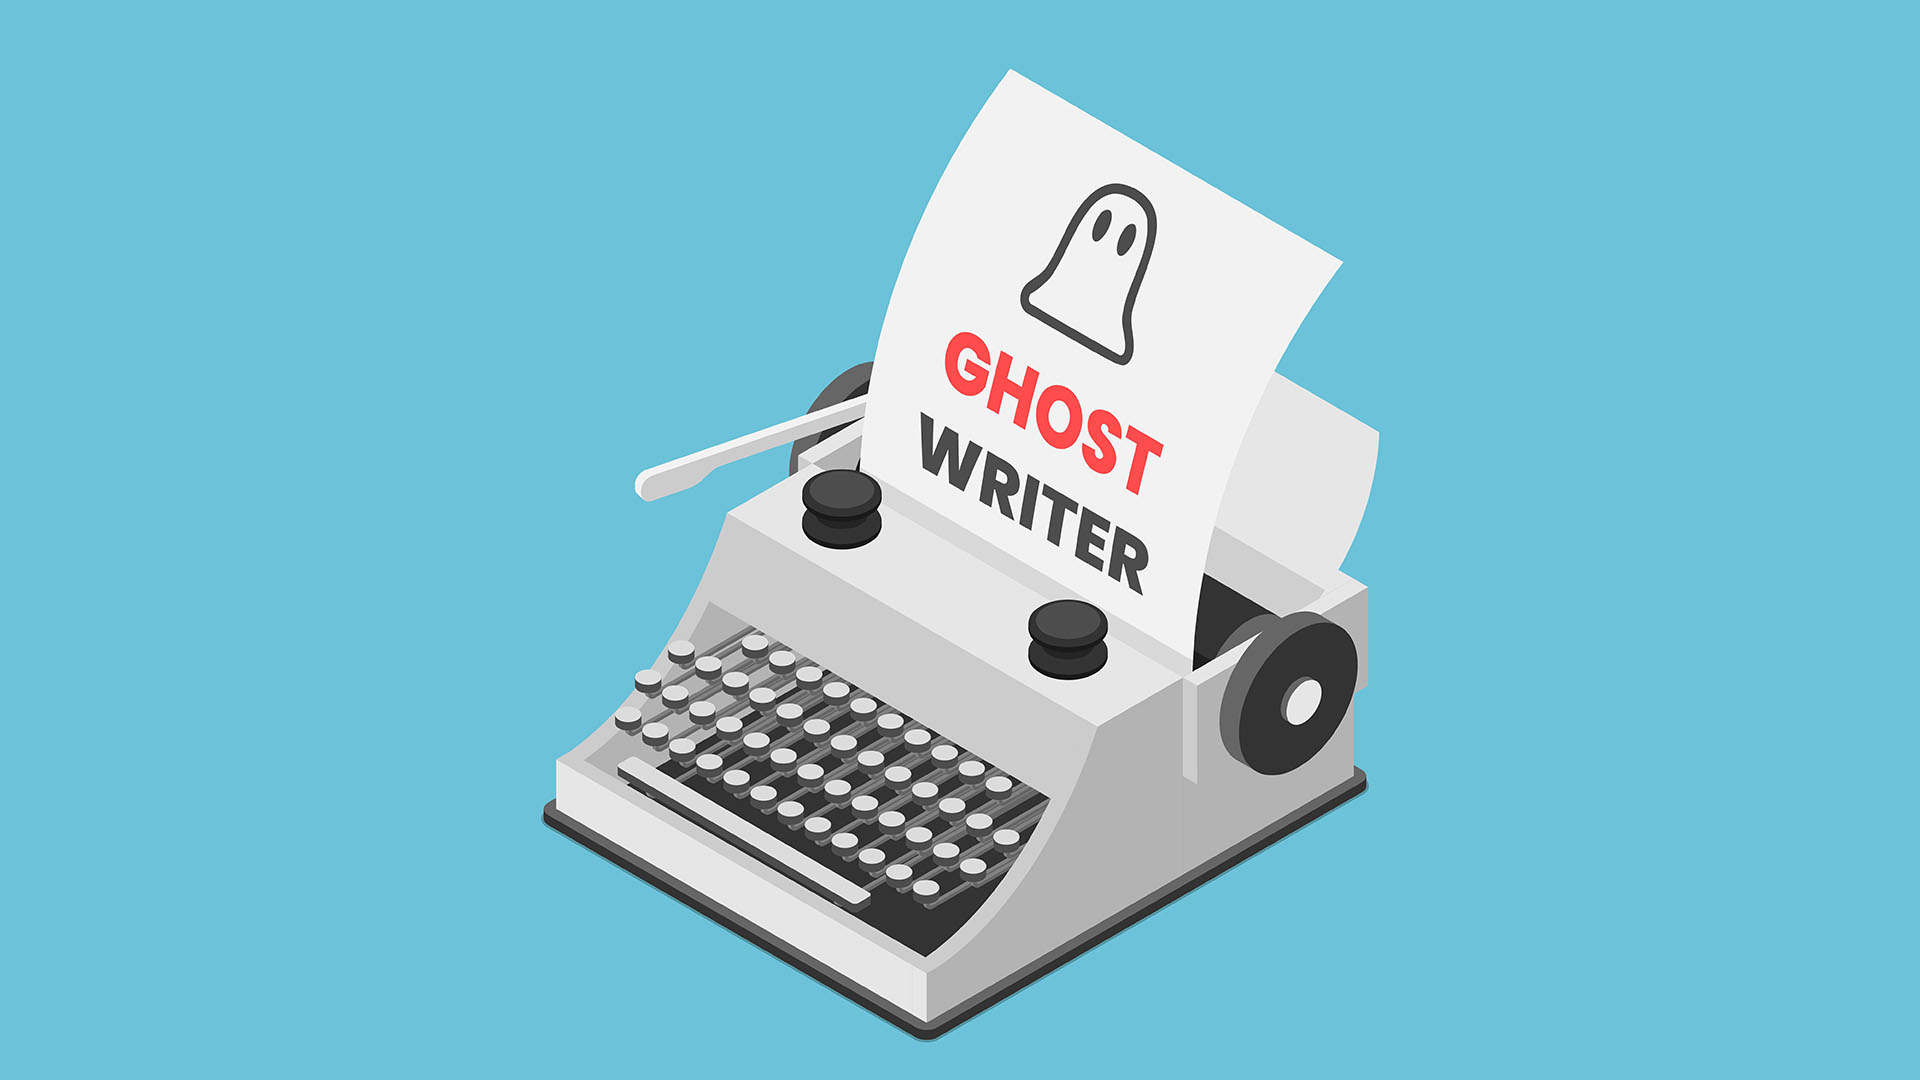 Un grupo de escritores con discapacidad constituyó una asociación de “ghostwriters”